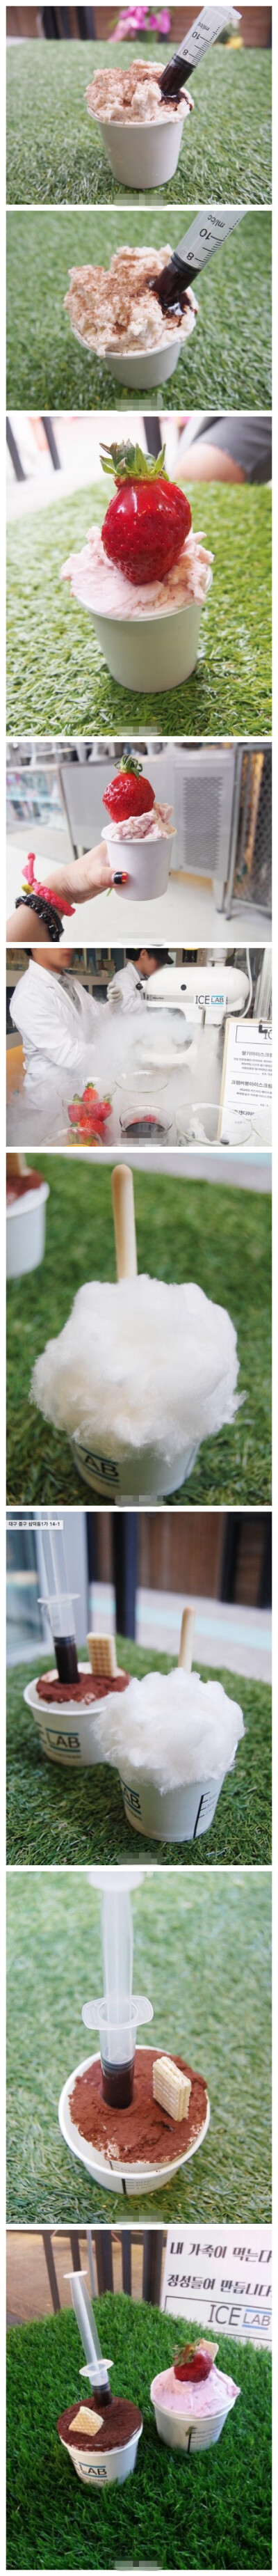 #韩国美食#【ice lab－아이스랩】#韩国美食# 点后就亲手做给你！好天然啊，而且服务员穿着白色衣服，好像在研究所的感觉 #韩国旅行# // 推荐：冰淇淋4000～4500韩元 ／地址：大丘（대구 중구 삼덕동1가 14-1)